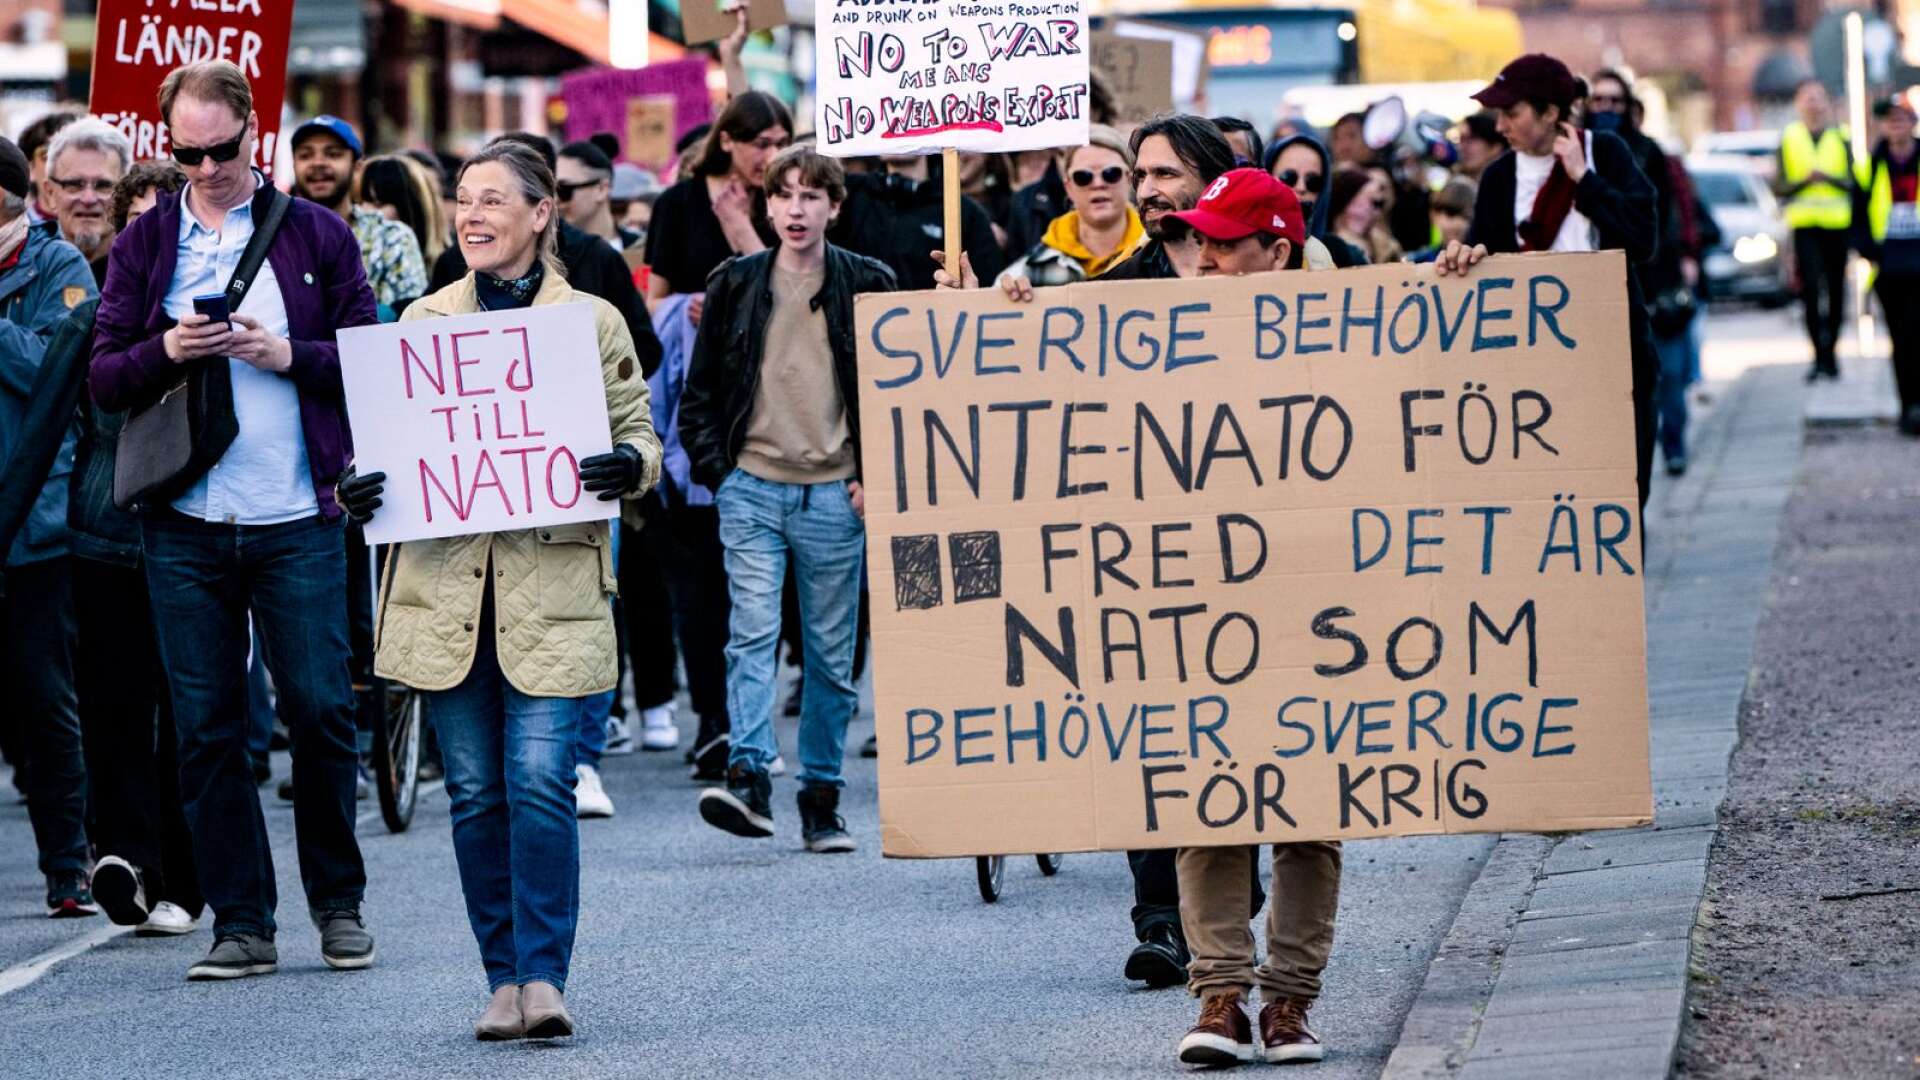 <strong id="strong-71fa3db766273f352afb3faecdc39d4d">Gertowe Thörnros (V) vill inte att Sverige ansluter sig till Nato. Bilden är från en demonstration mot Nato i Malmö i början av maj.</strong>

